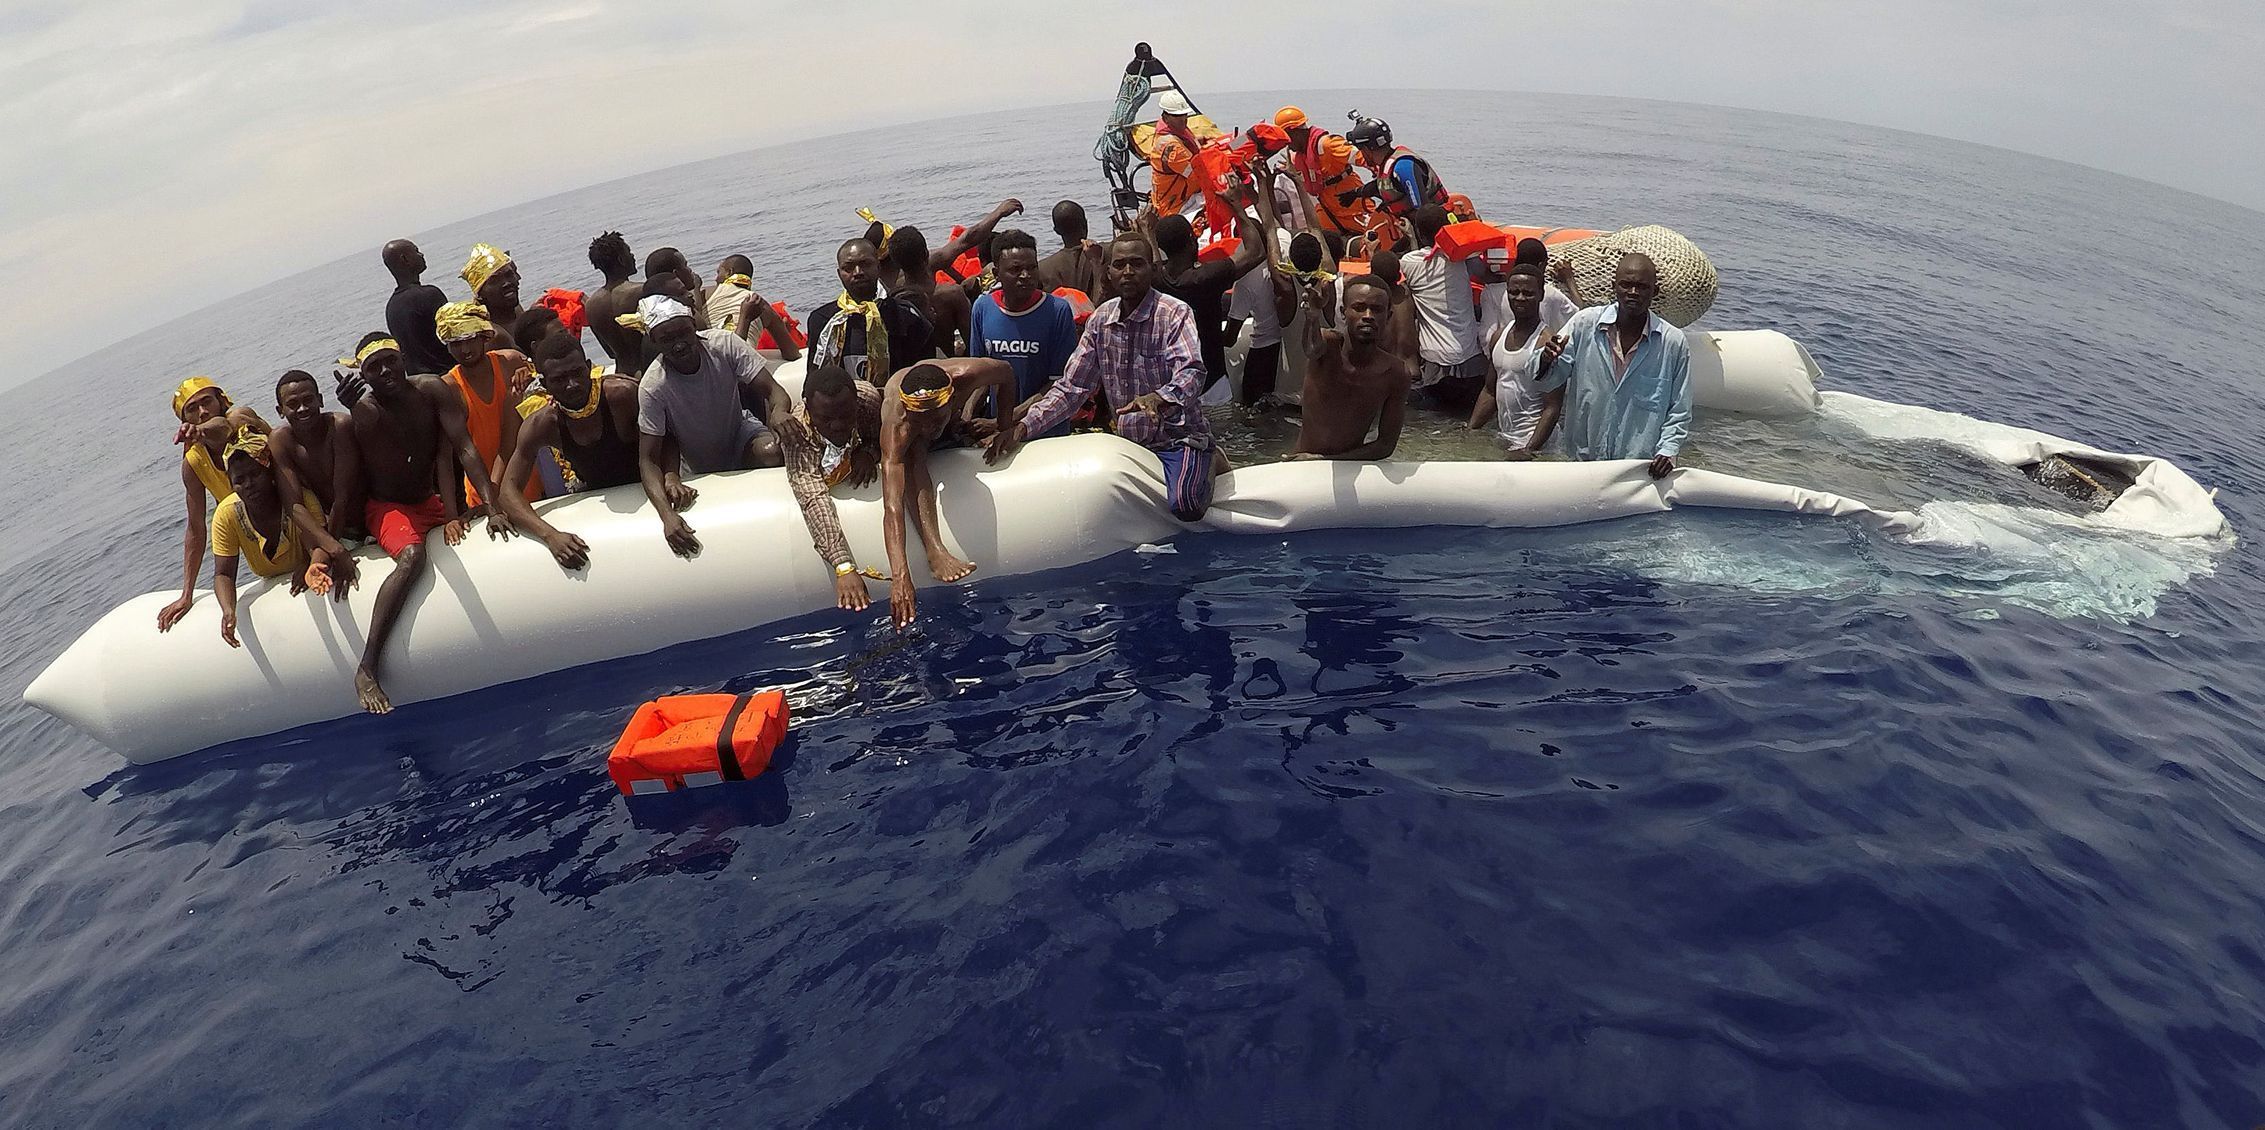 Migranti ve vlnách Středozemního moře